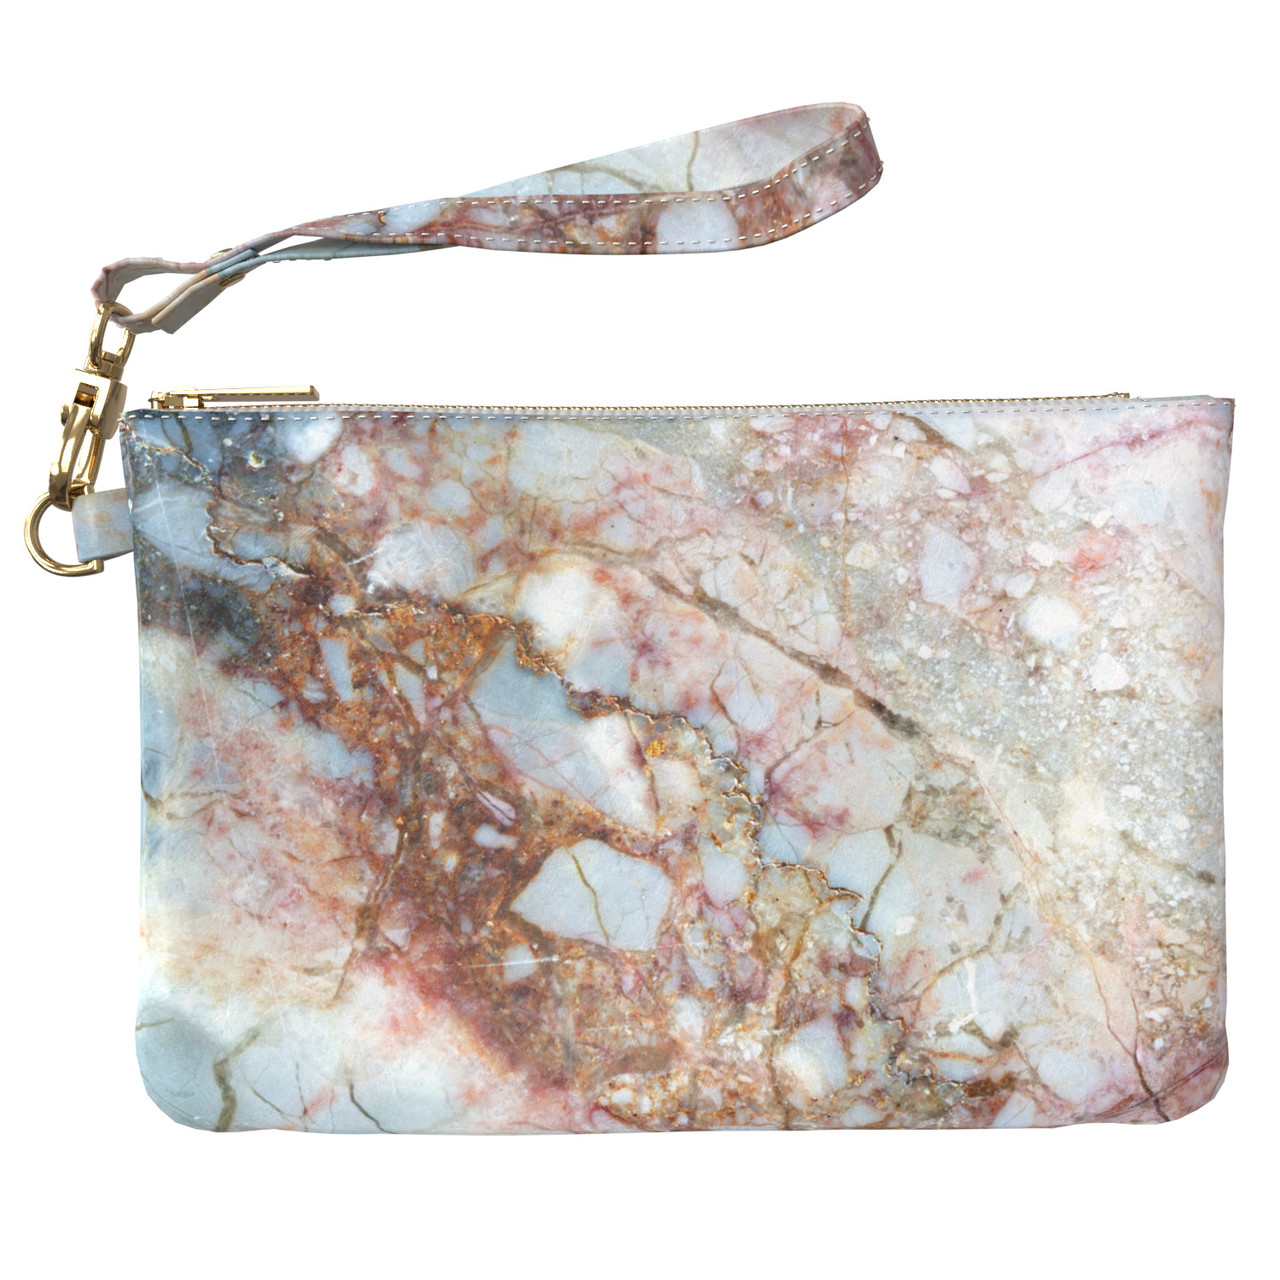 Жіноча косметичка, дорожня сумочка (Природний камінь) ручної роботи з еко-шкіри